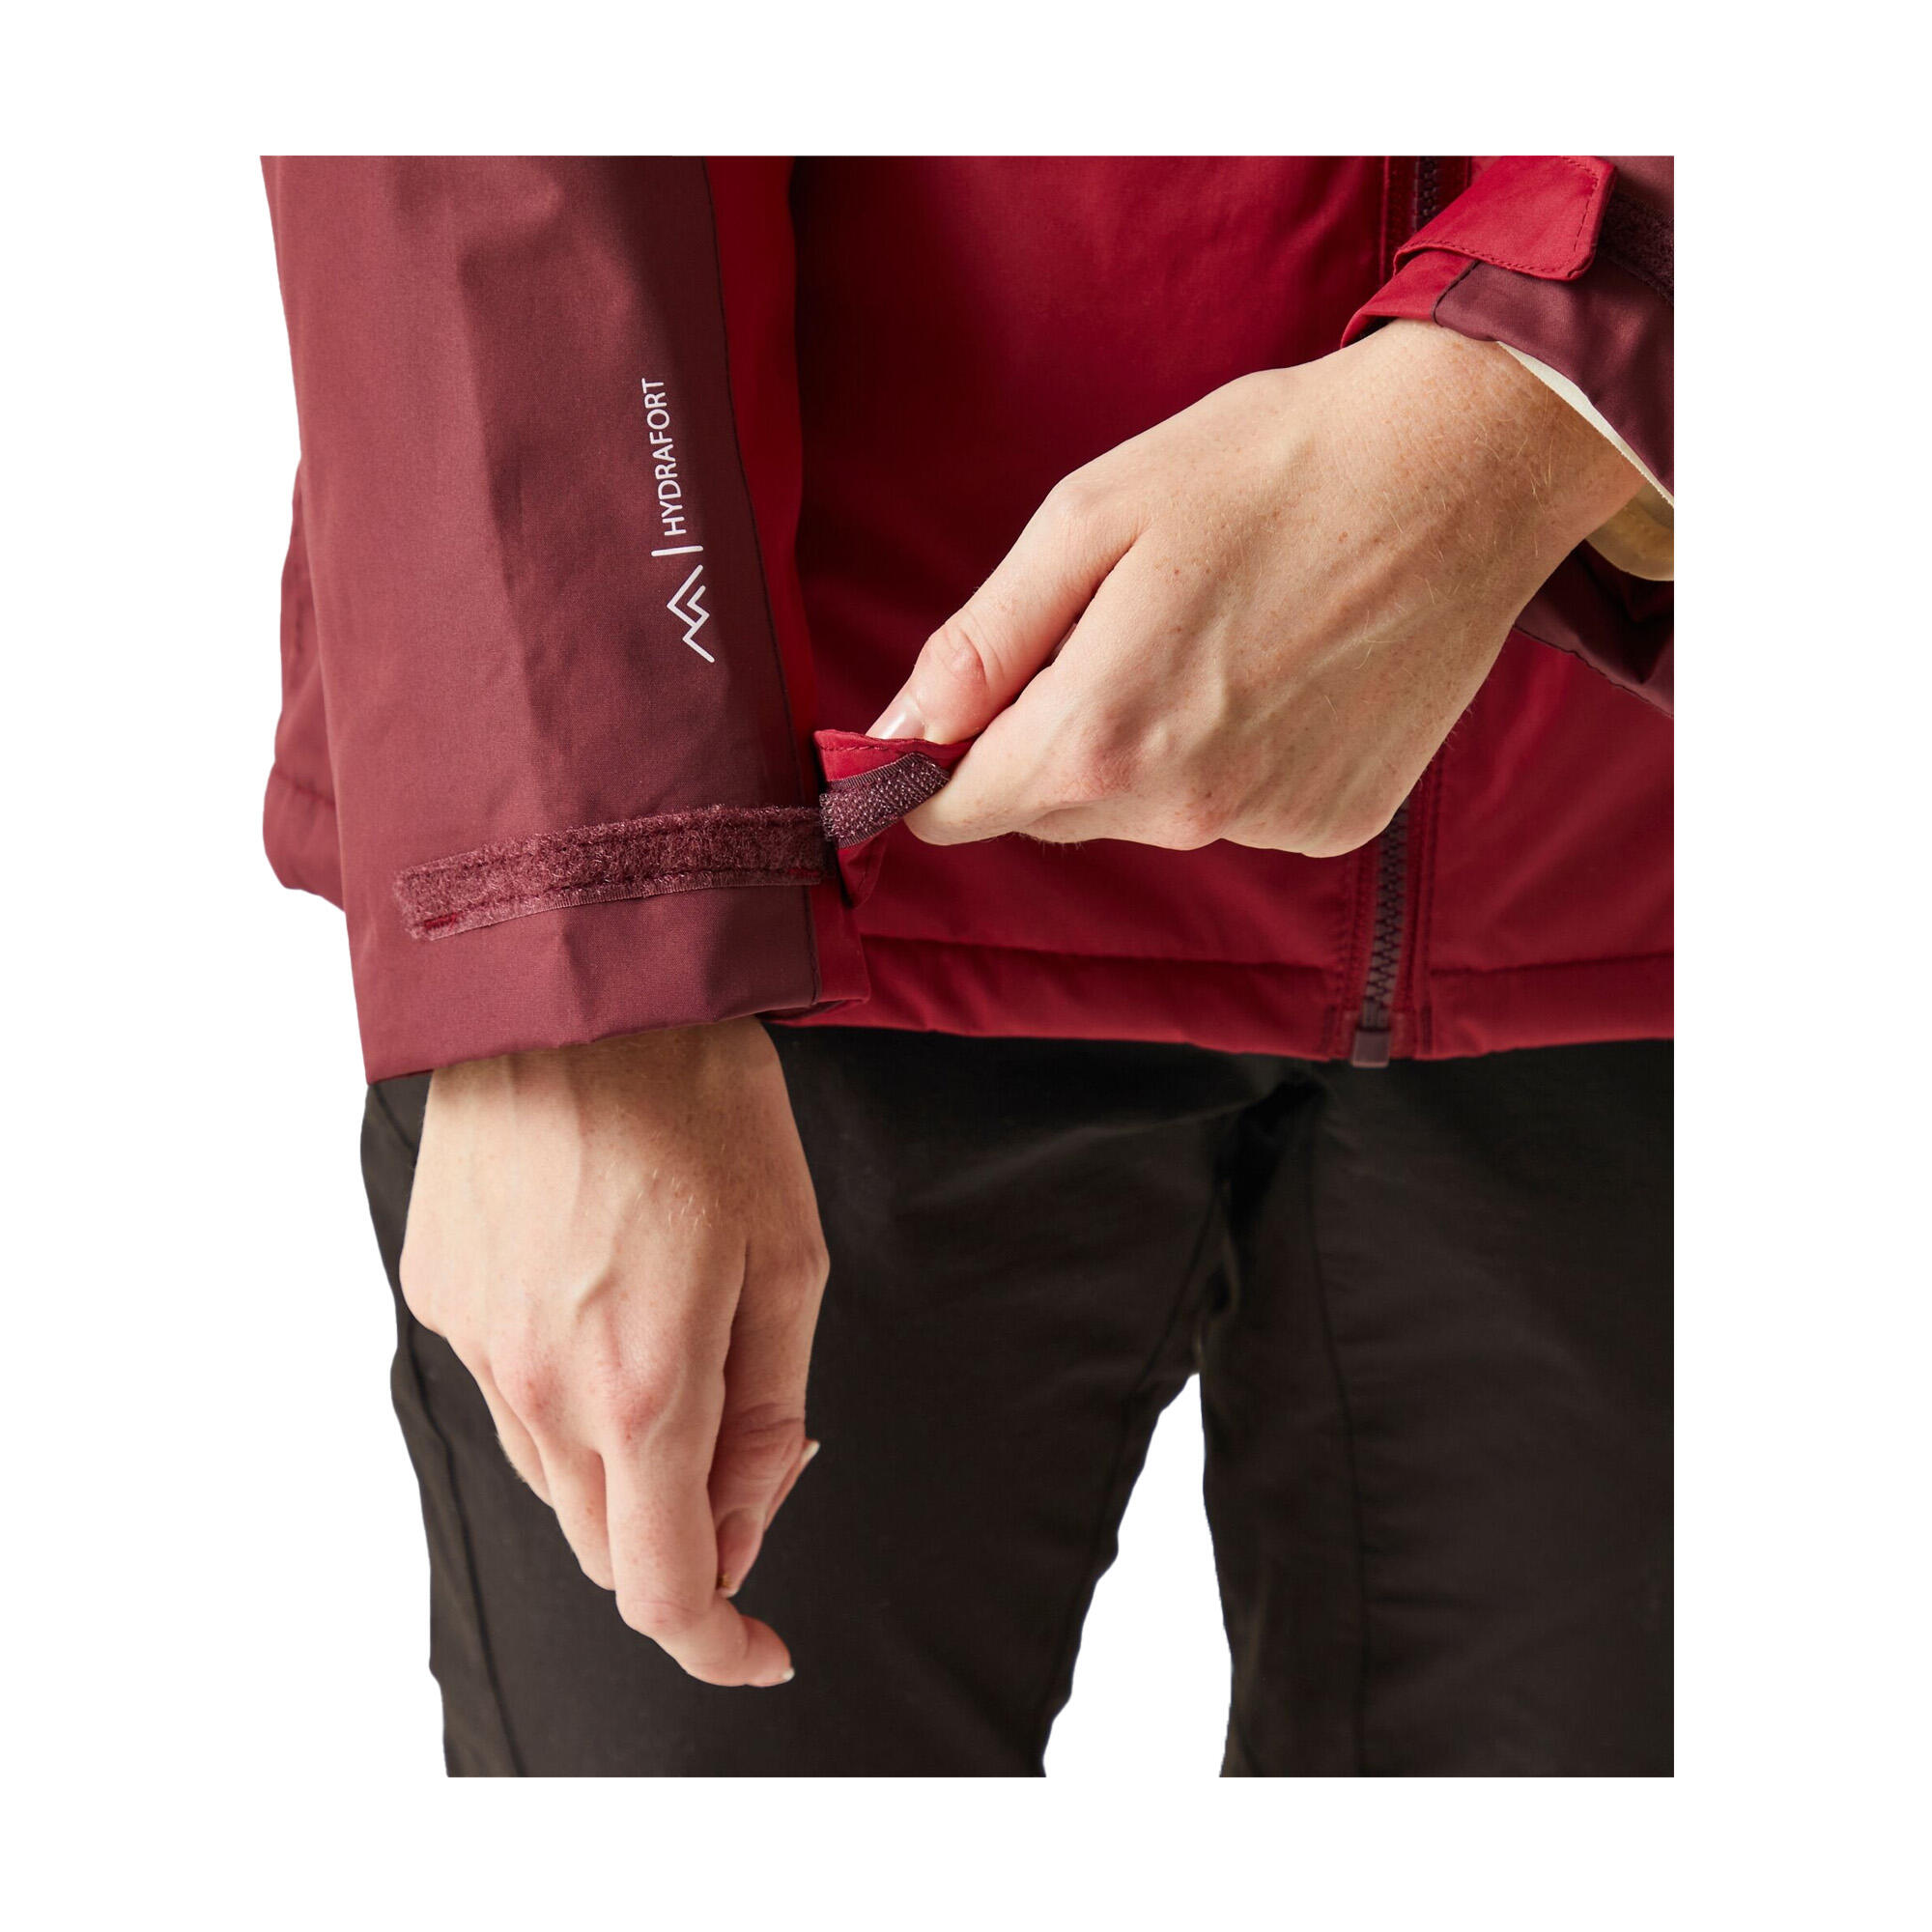 Womens/Ladies Calderdale Winter Waterproof Jacket (Rumba Red/Burgundy) 4/5